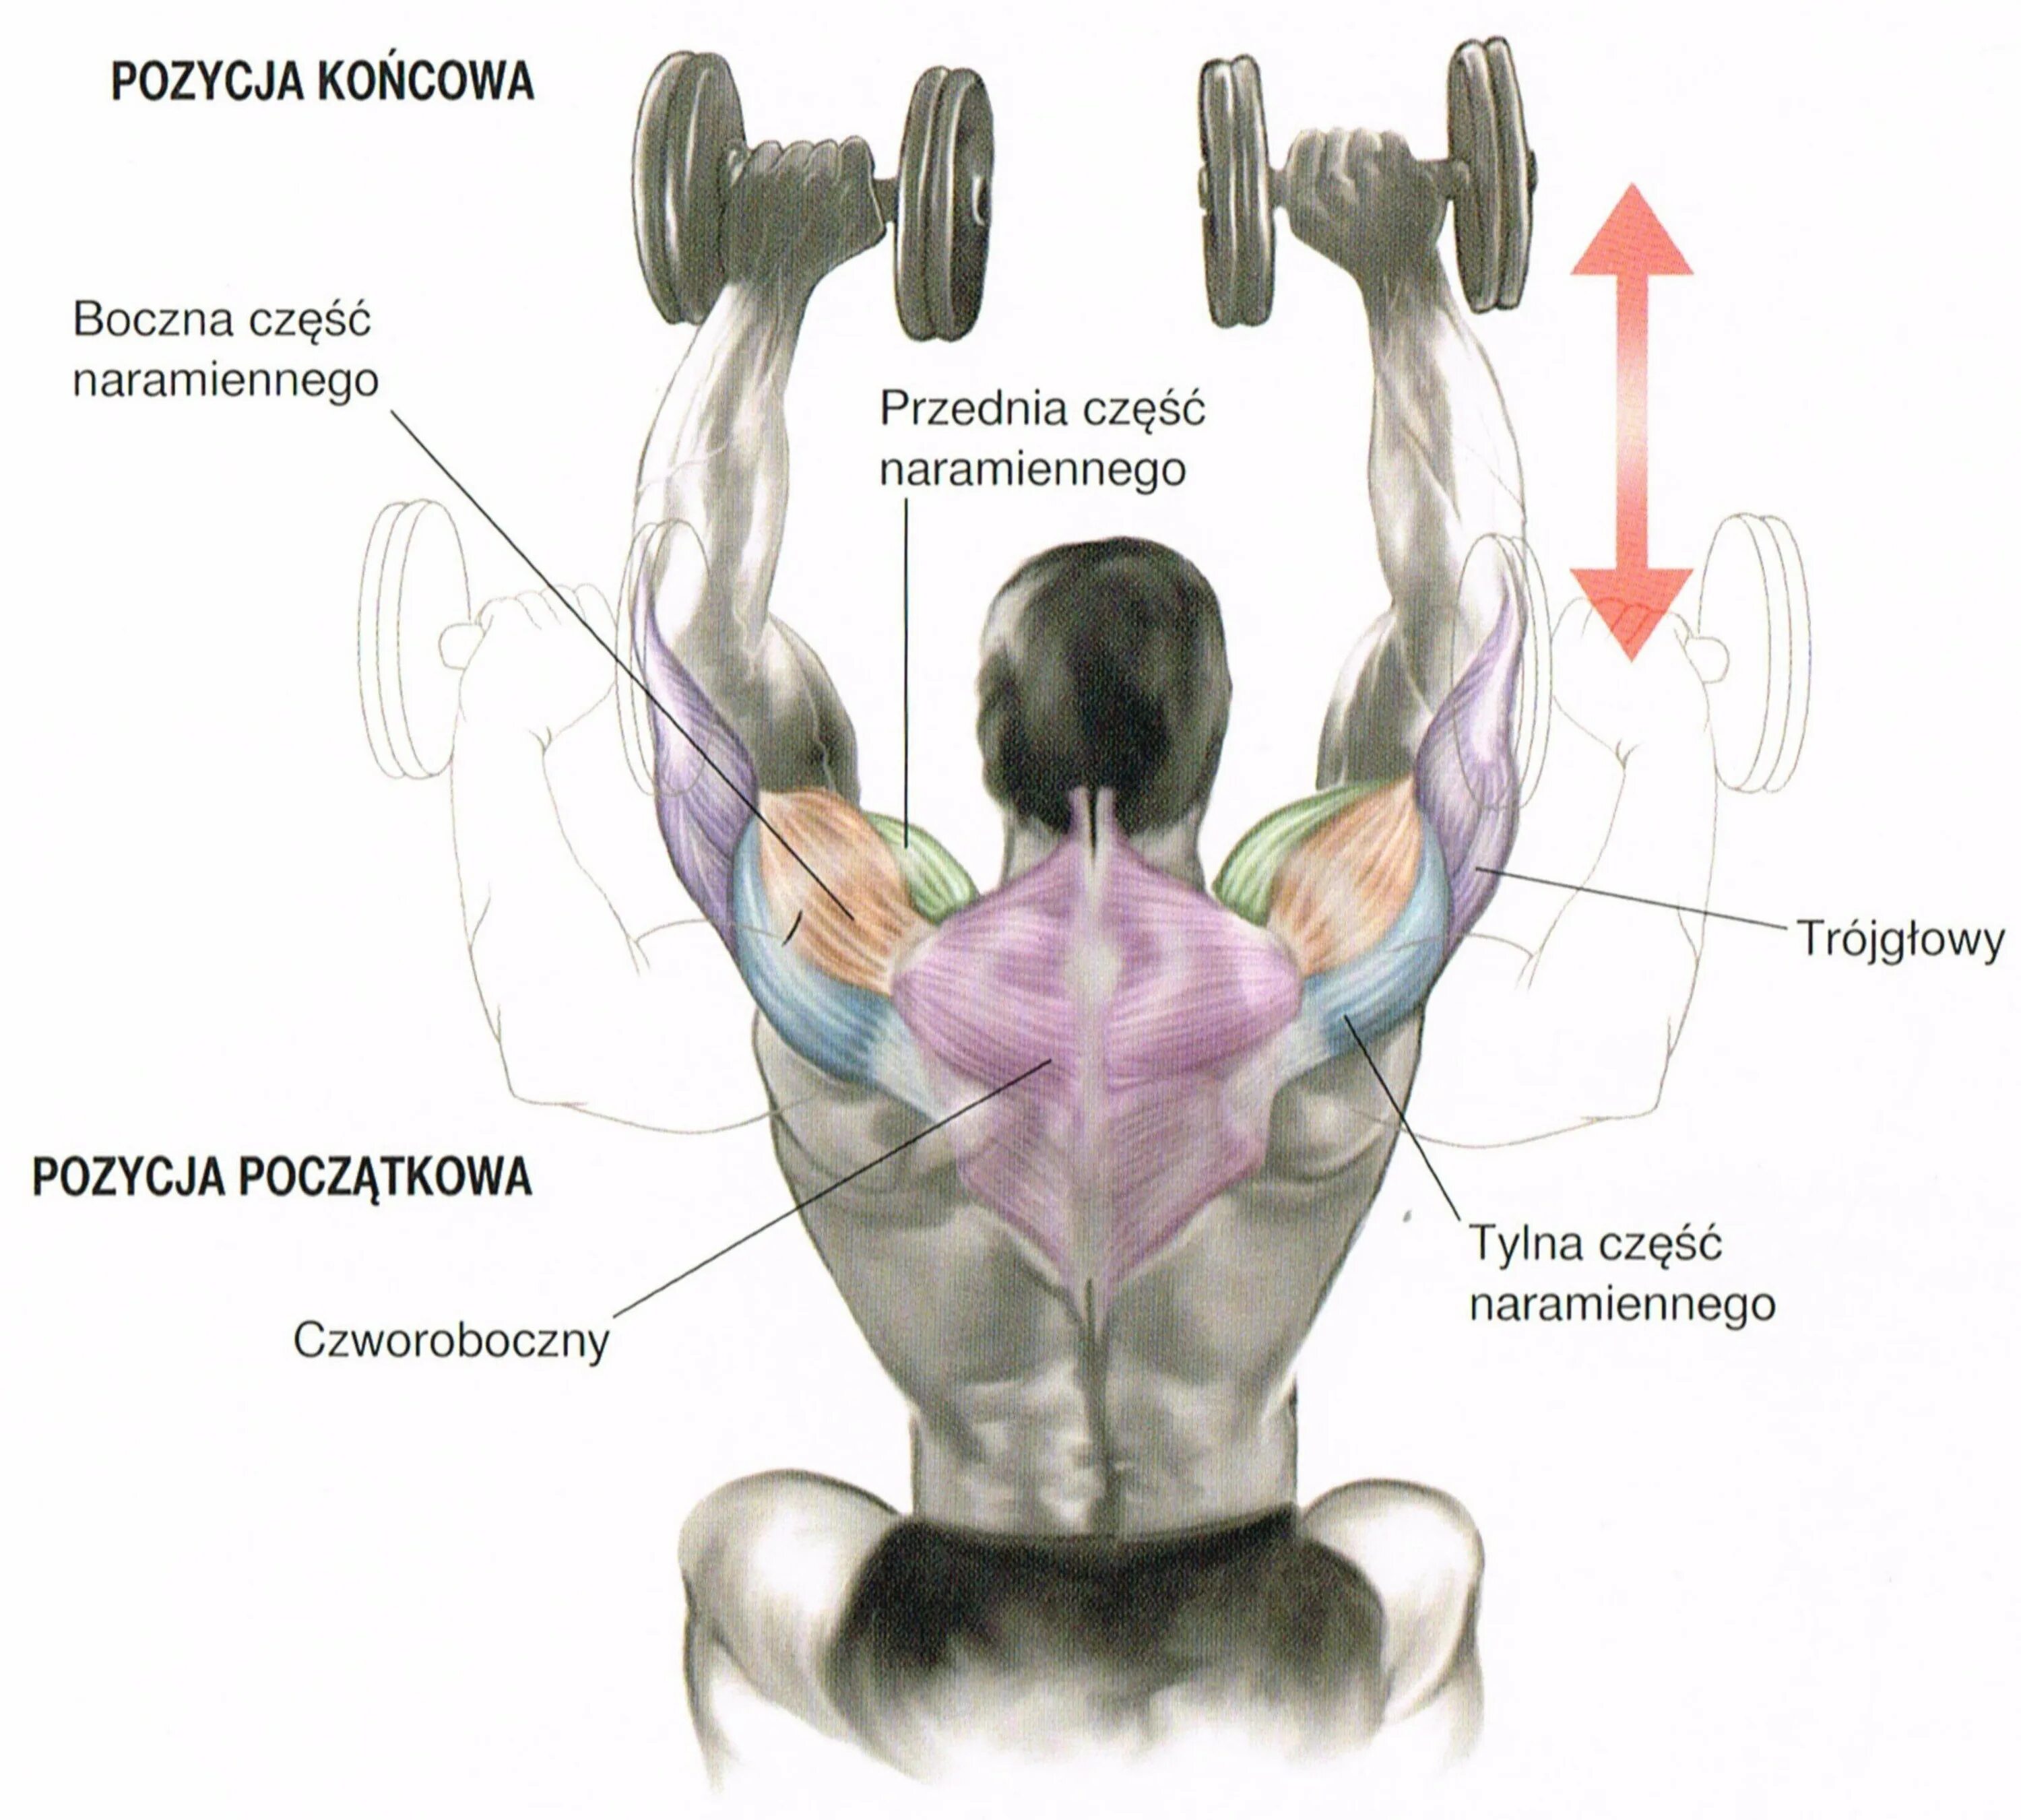 Положение пучков. Упражнения на дельтовидные мышцы с гантелями. Жим гантелей сидя на передние дельтовидные мышцы. Тренировка дельтовидных мышц гантелями. Упражнения на плечи.